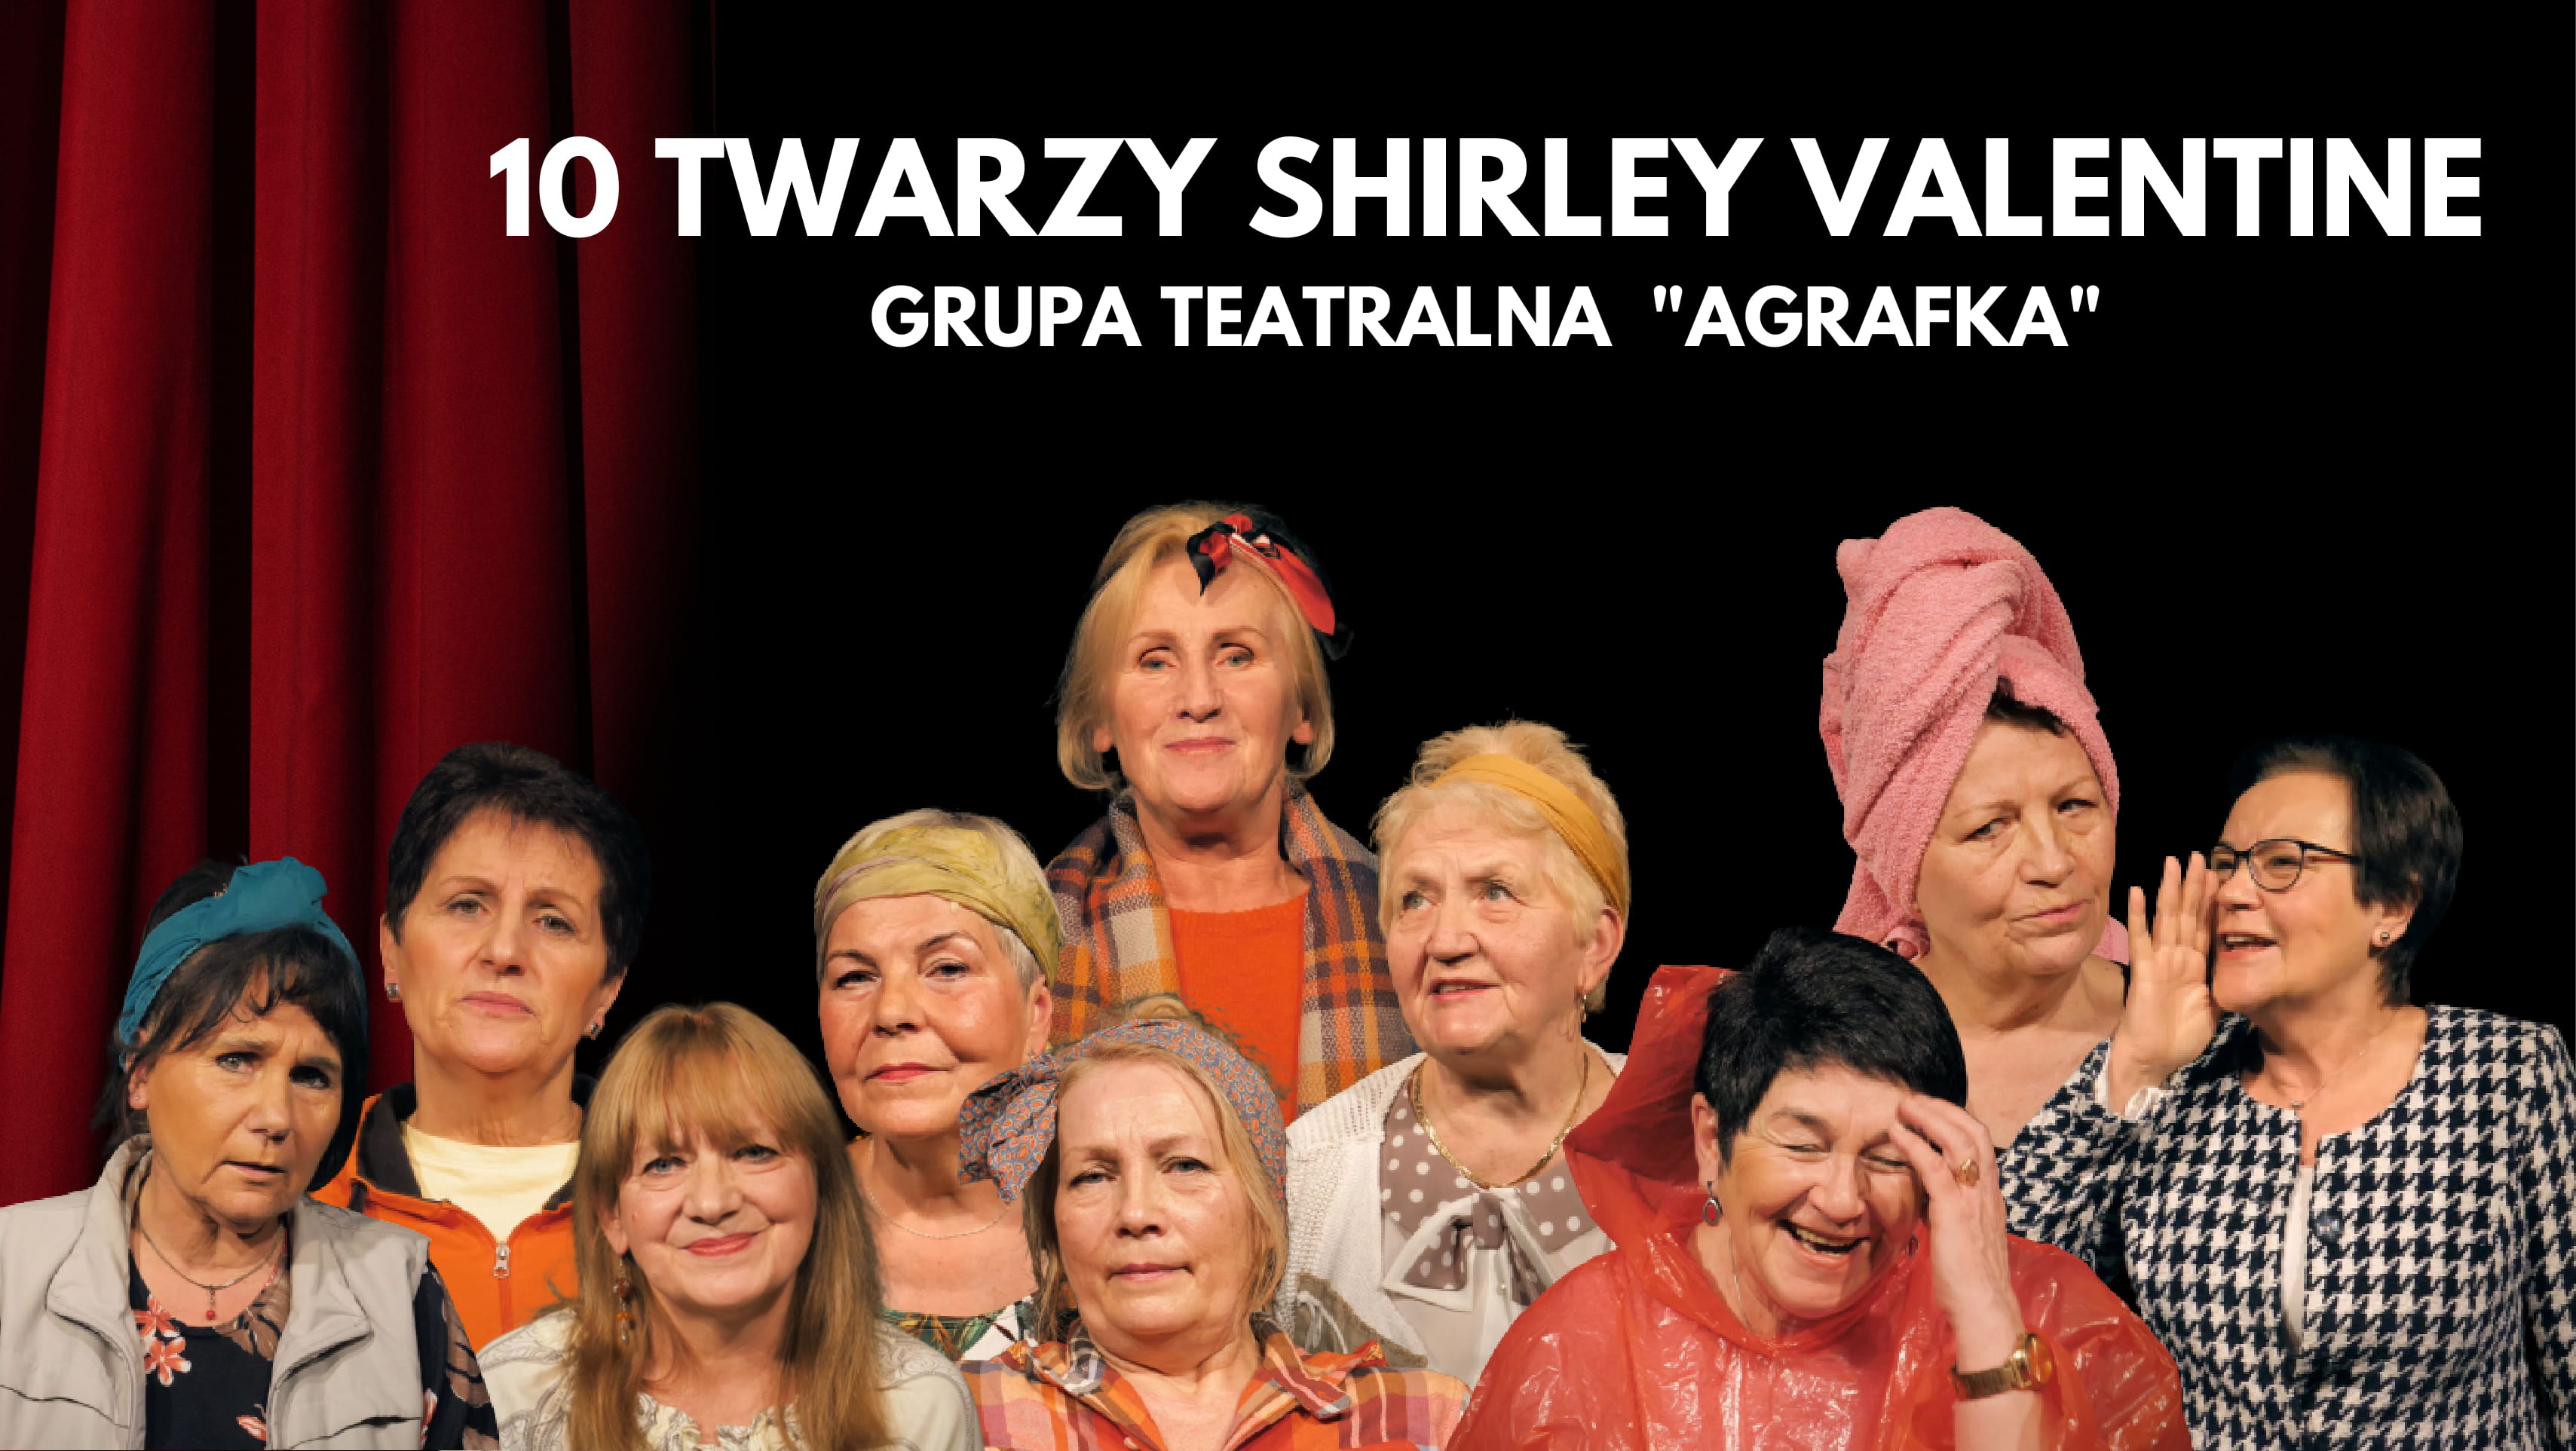 zdjęcie grupowe aktorek grupy teatralnej agrafka do projektu 10 twarzy shirley valentine